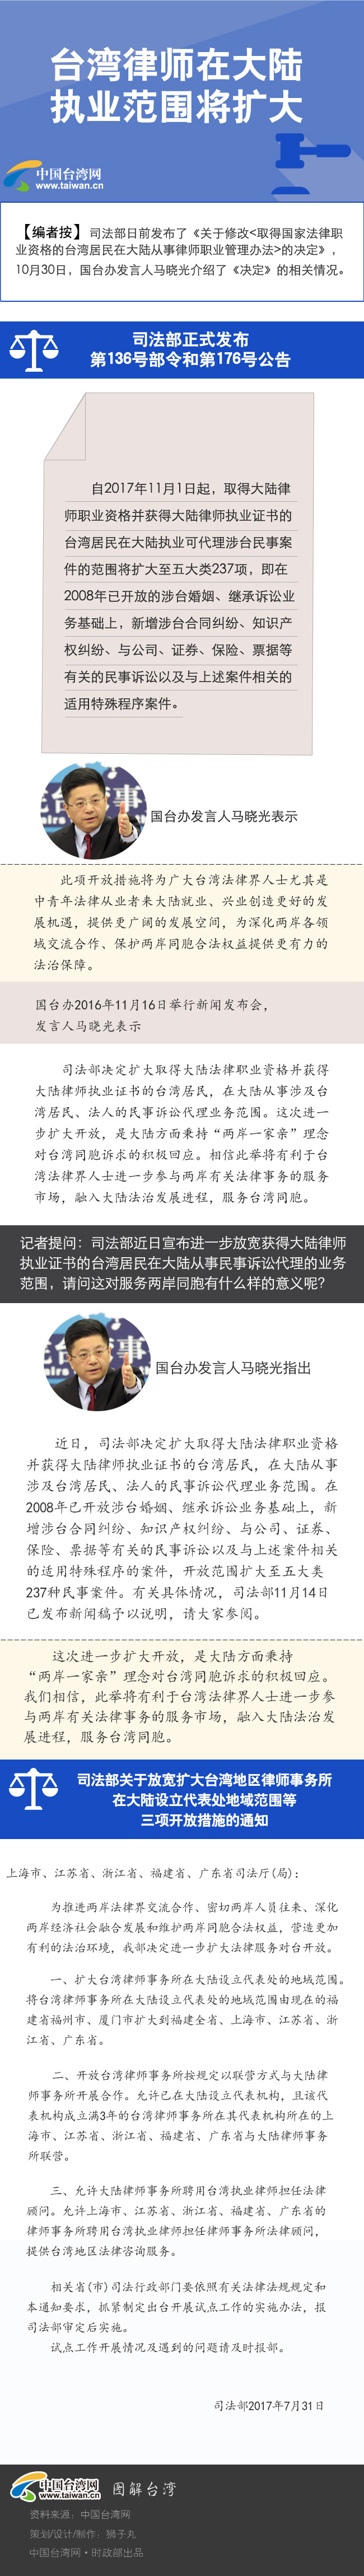 【图解新闻】台湾律师在大陆执业范围将扩大